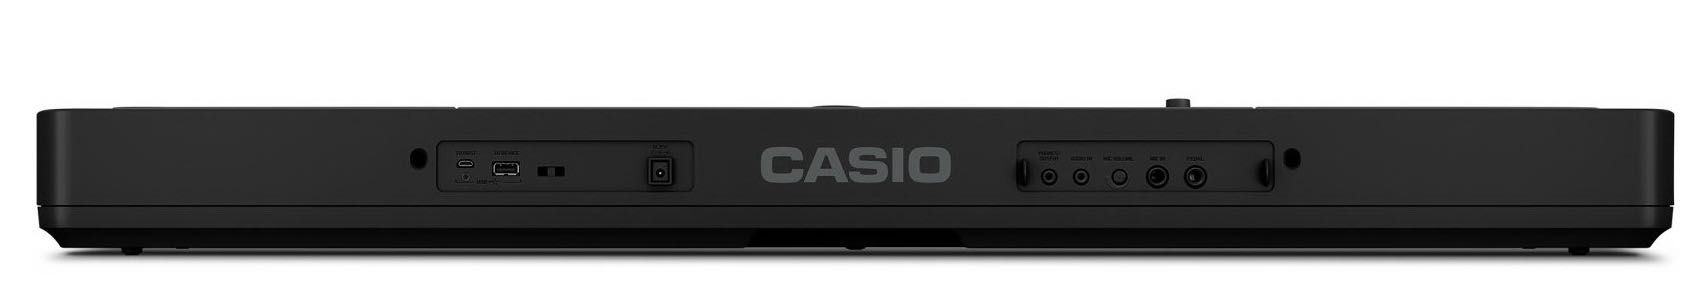 Casio LK-S450 - podświetlana klawiatura | kup NOWY wymień STARY